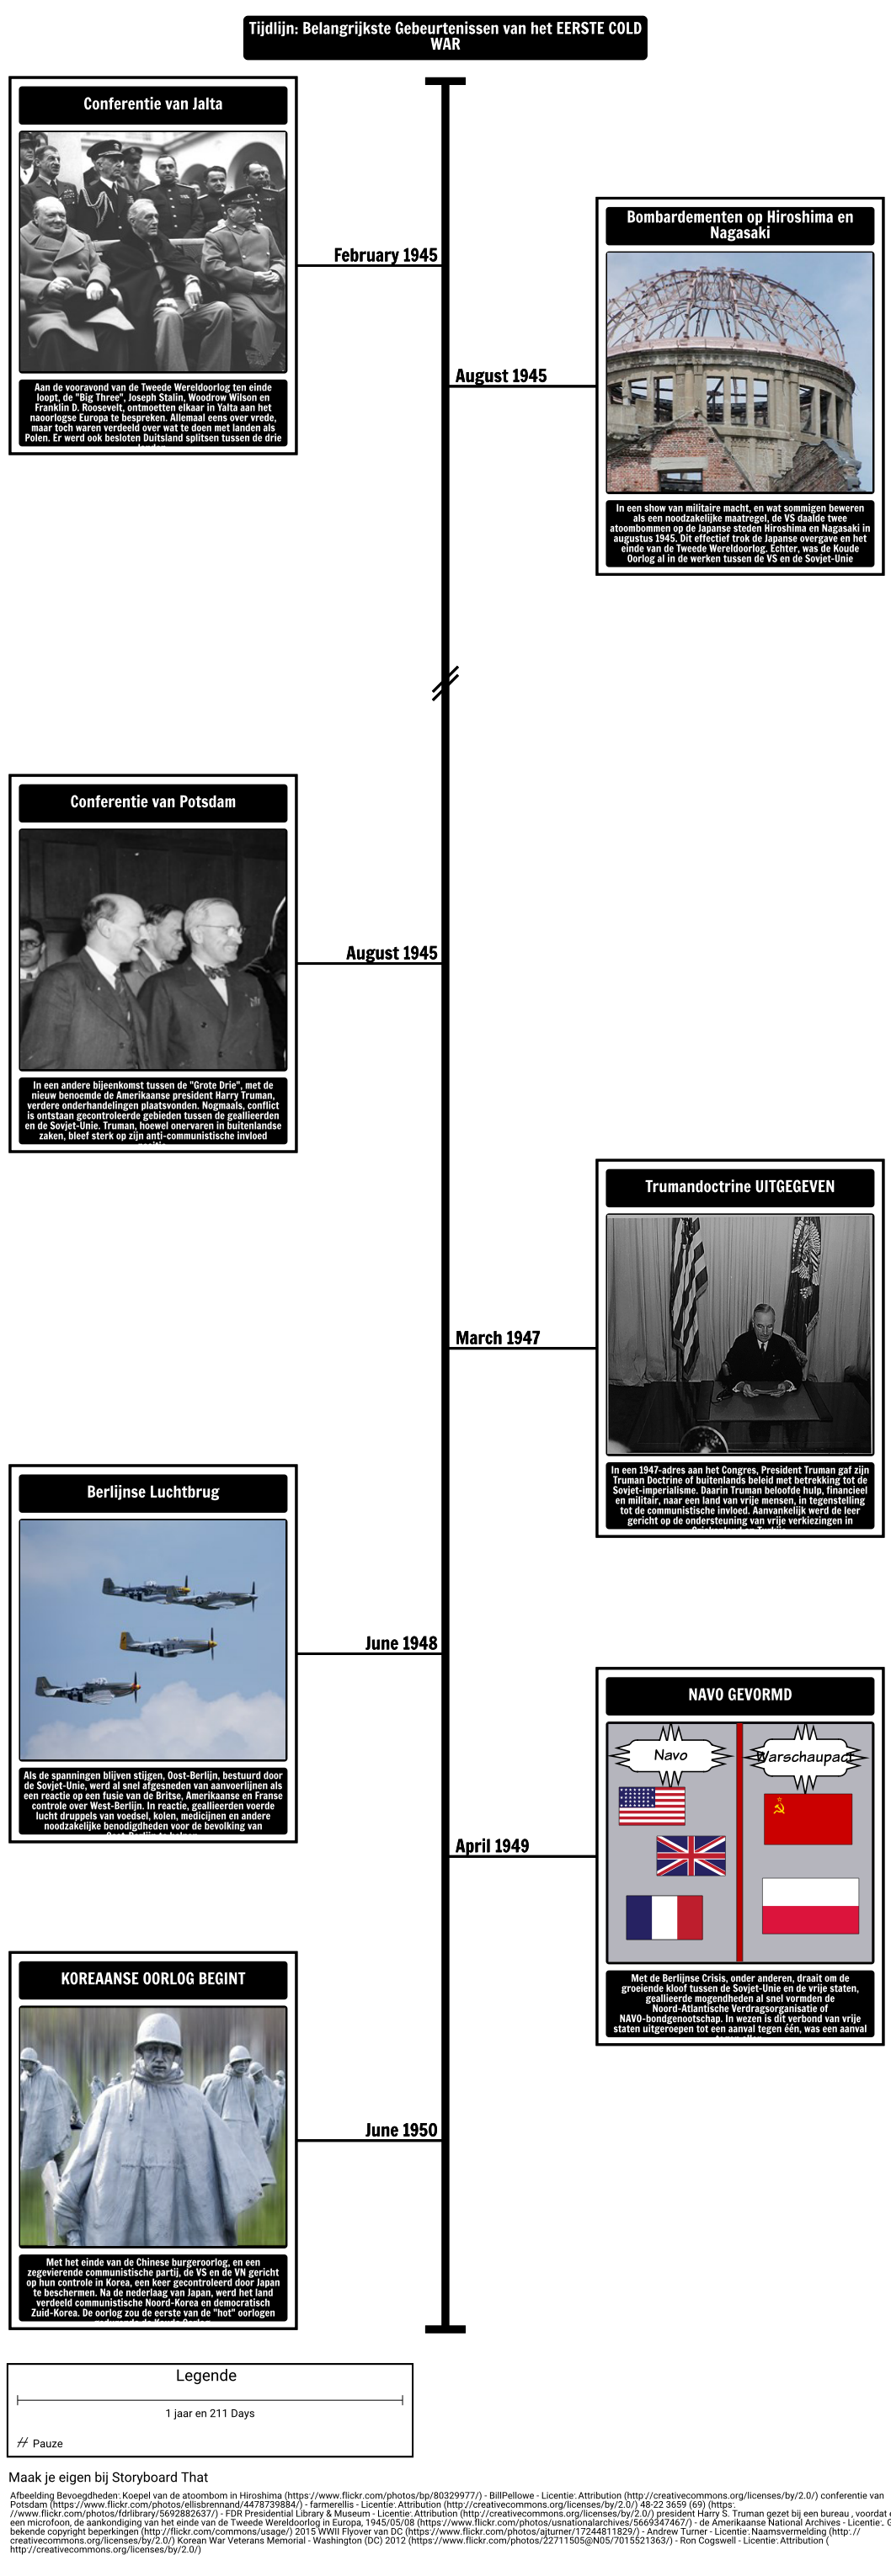 Timeline - Major Events van de Eerste Koude Oorlog